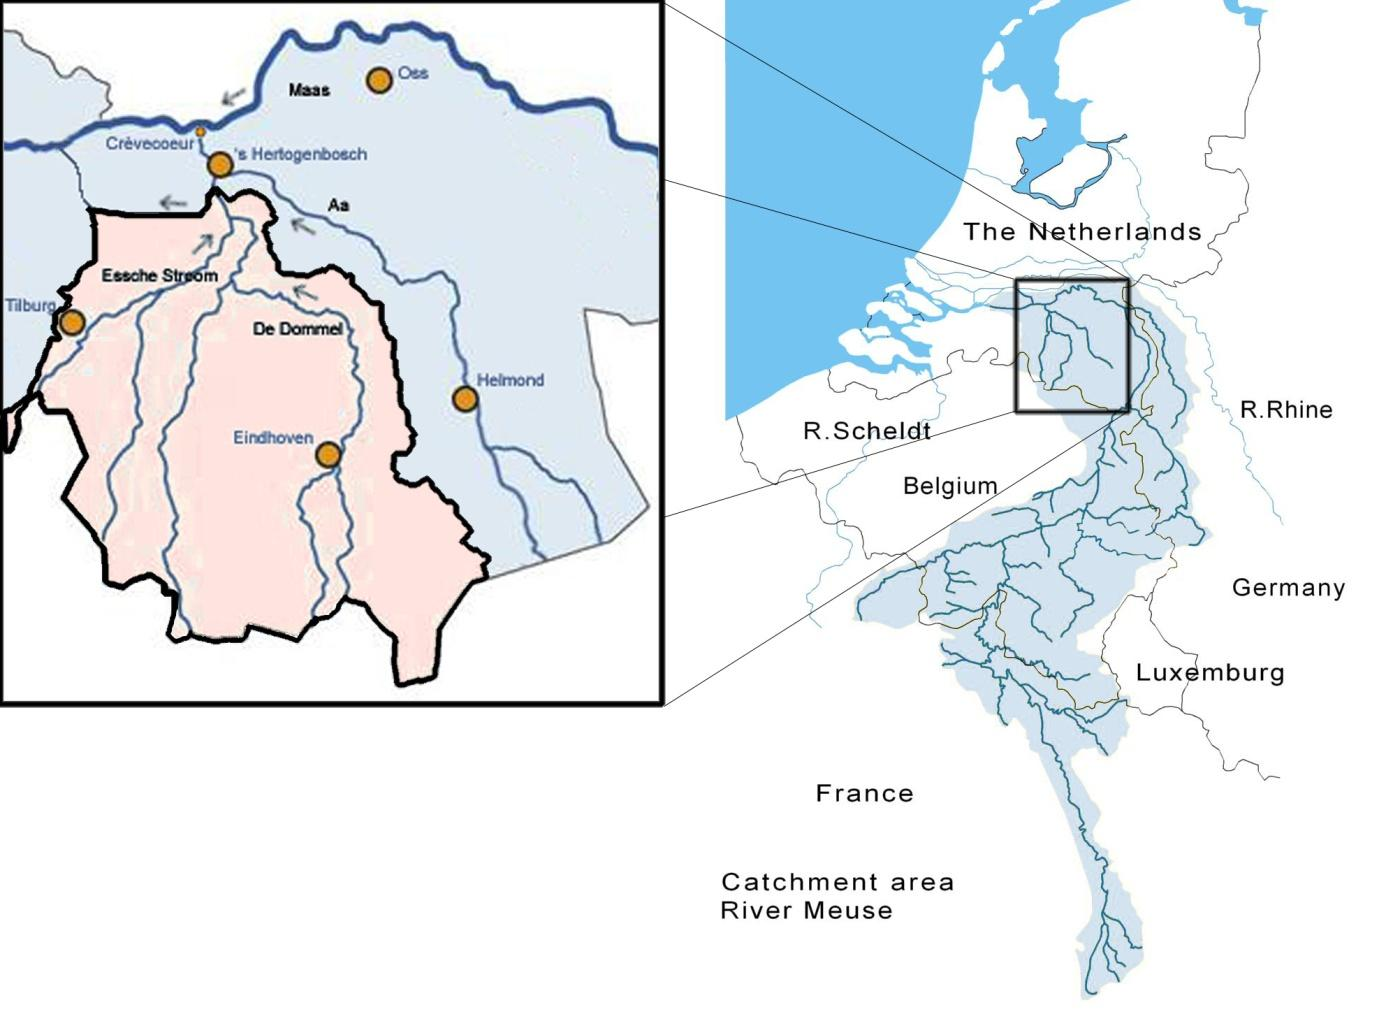 Figuur 1-1: Stroomgebied van de Maas met inzet van de Nederlandse stroomgebieden De Dommel en de Aa. Vrij naar: http://www.brabantsewaterkaart.nl en http://www.riou.be/nl/?l1=11.ardennen&l2=1.